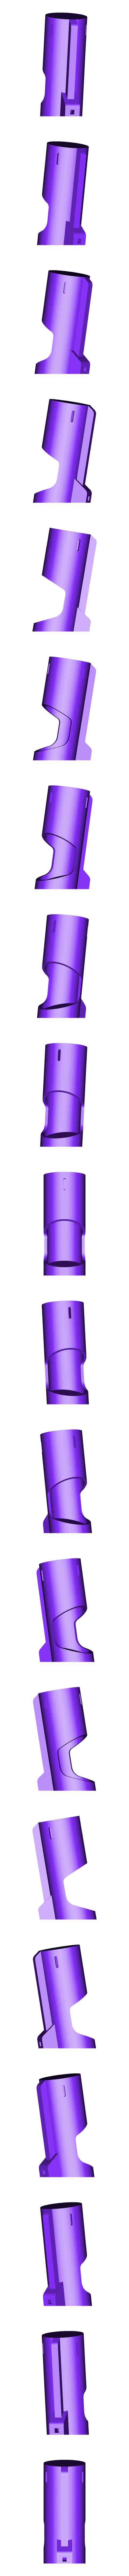 tub.stl Download STL file The Tube lamp • 3D printable design, Ciokobango